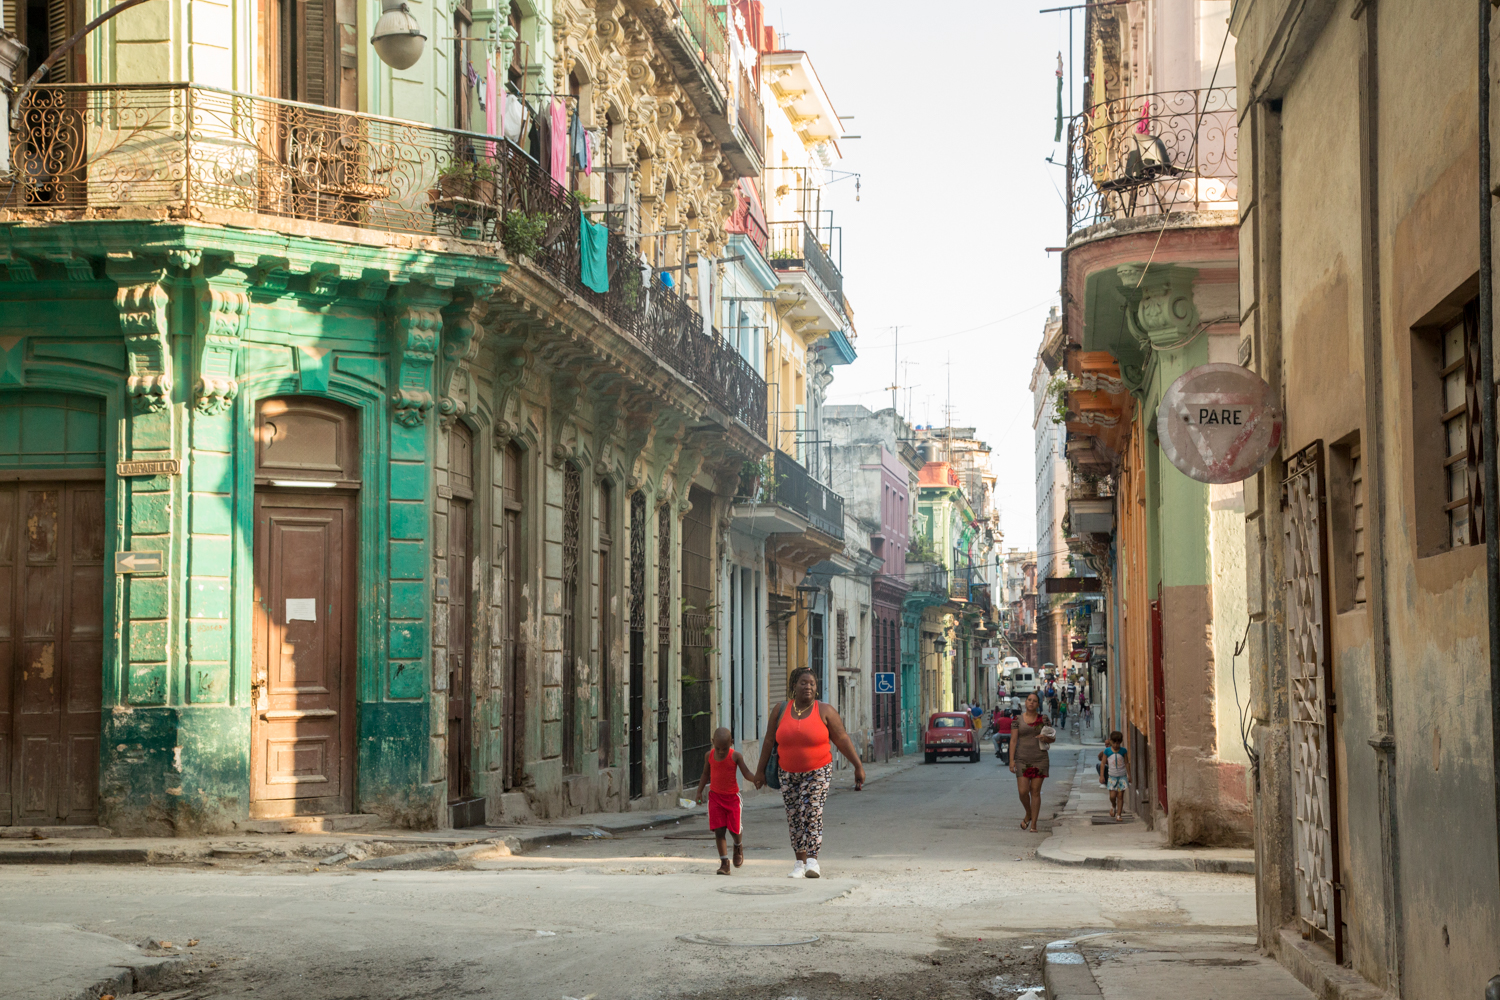 180_20160426-31360-5DM3-Cuba-Havana.jpg